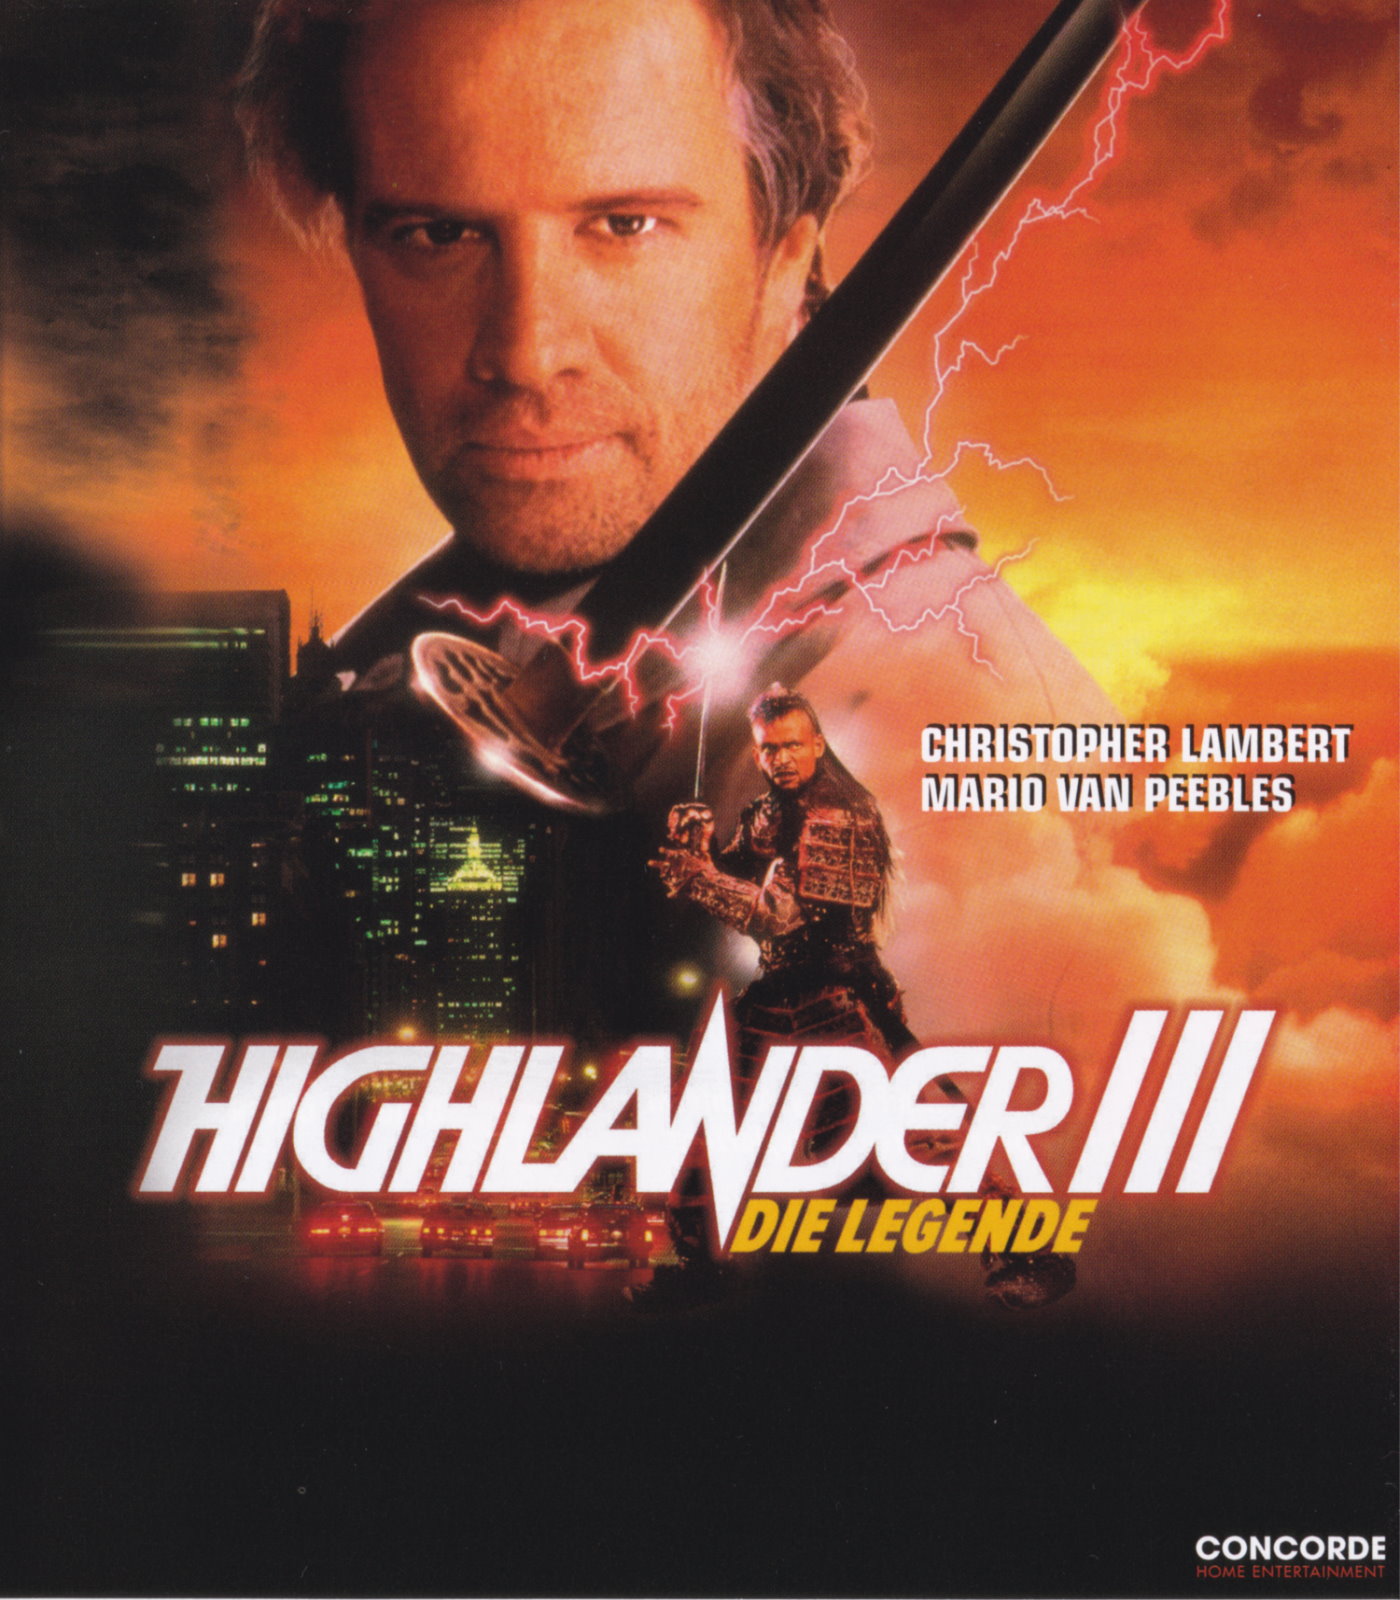 Cover - Highlander III - Die Legende.jpg